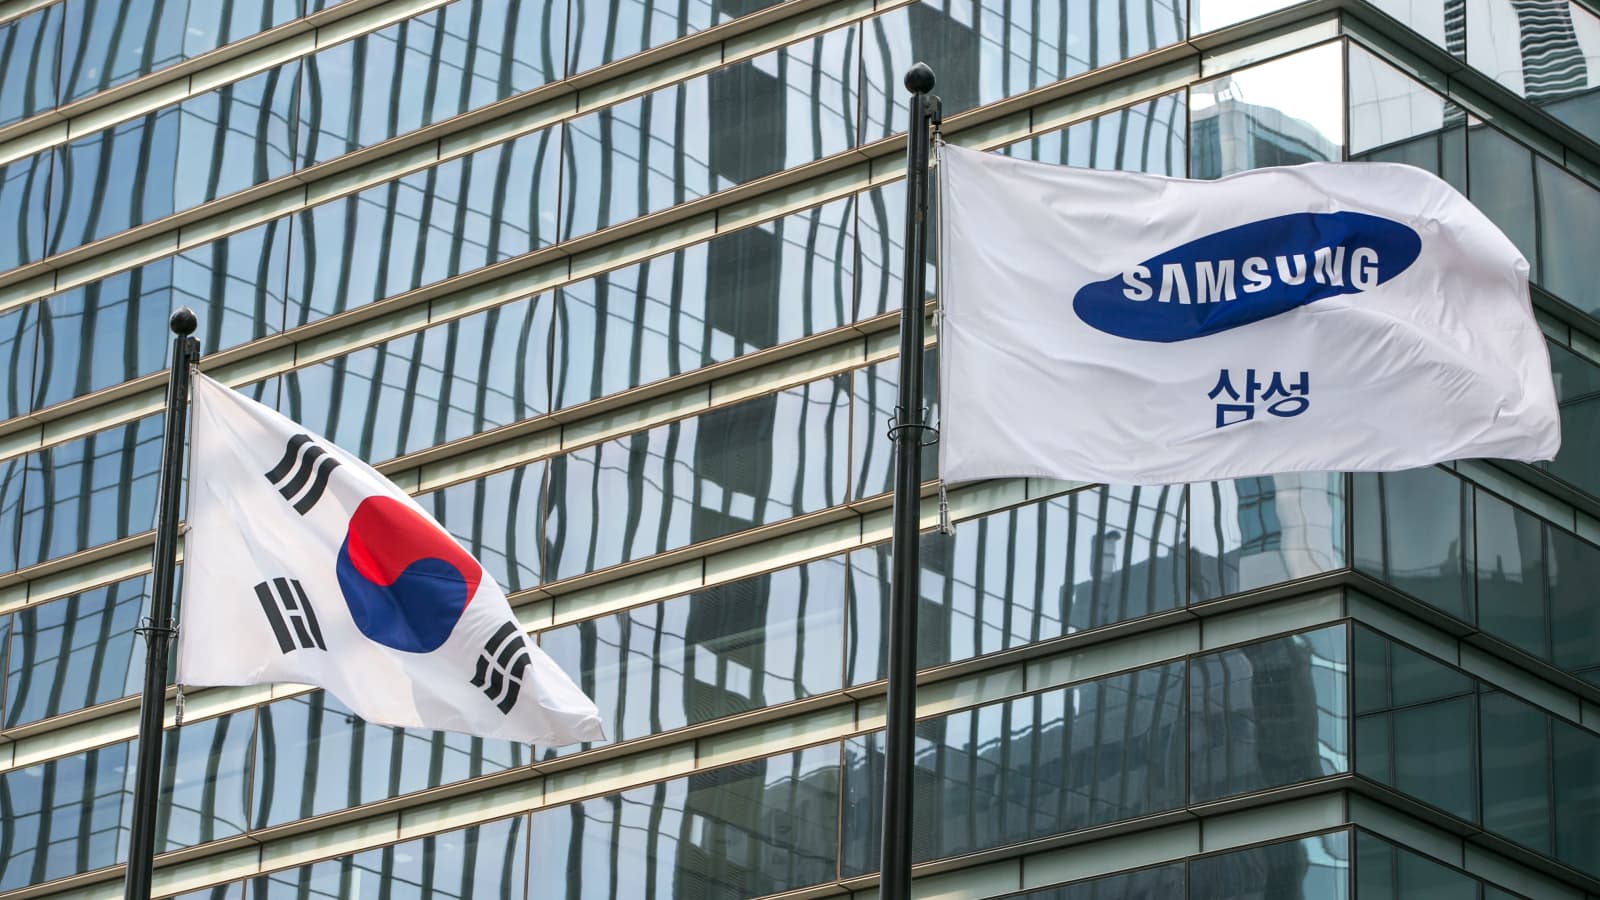 Samsung profit: Samsung là một trong những thương hiệu công nghệ lớn nhất thế giới, và lợi nhuận của họ luôn đạt mức cao nhất. Hình ảnh liên quan sẽ khiến bạn nghĩ đến sự lớn mạnh, ổn định cũng như uy tín của thương hiệu này - một lựa chọn đáng tin cậy cho tất cả các nhu cầu công nghệ của bạn.